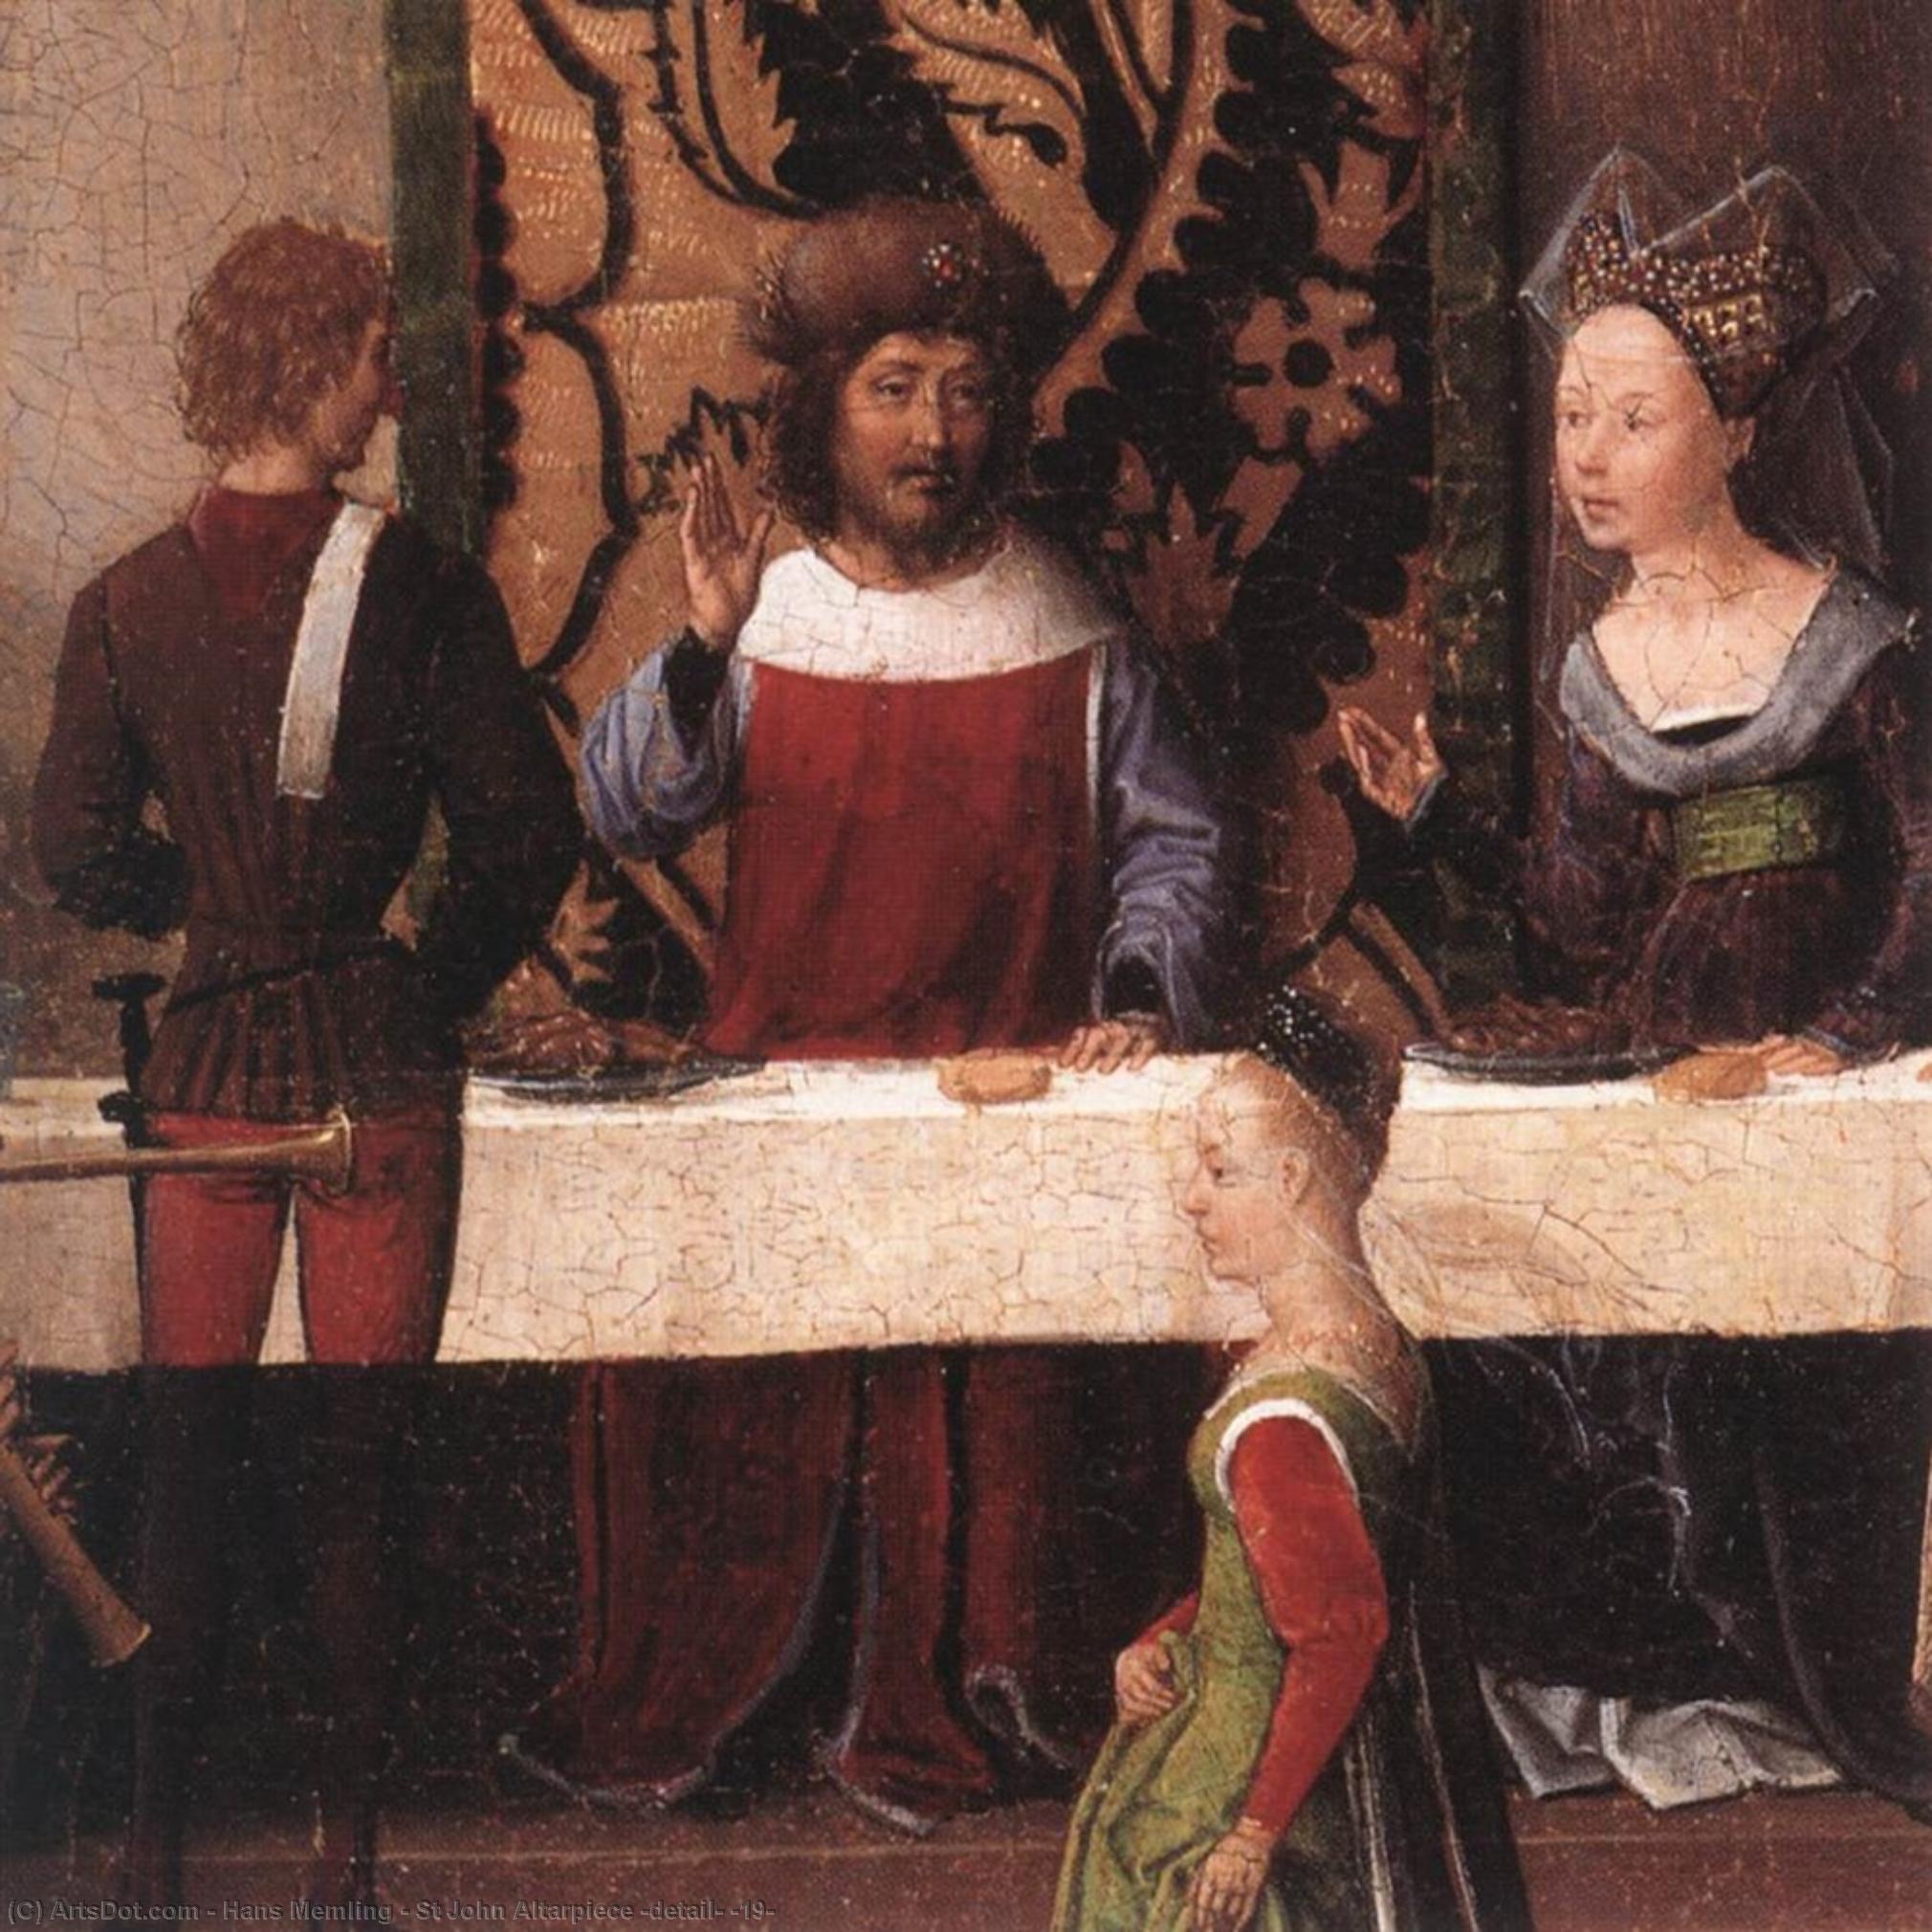 順序 手描き油絵 セント・ジョン・アルターピース(ディテール) (19), 1474 バイ Hans Memling (1430-1494, Germany) | ArtsDot.com